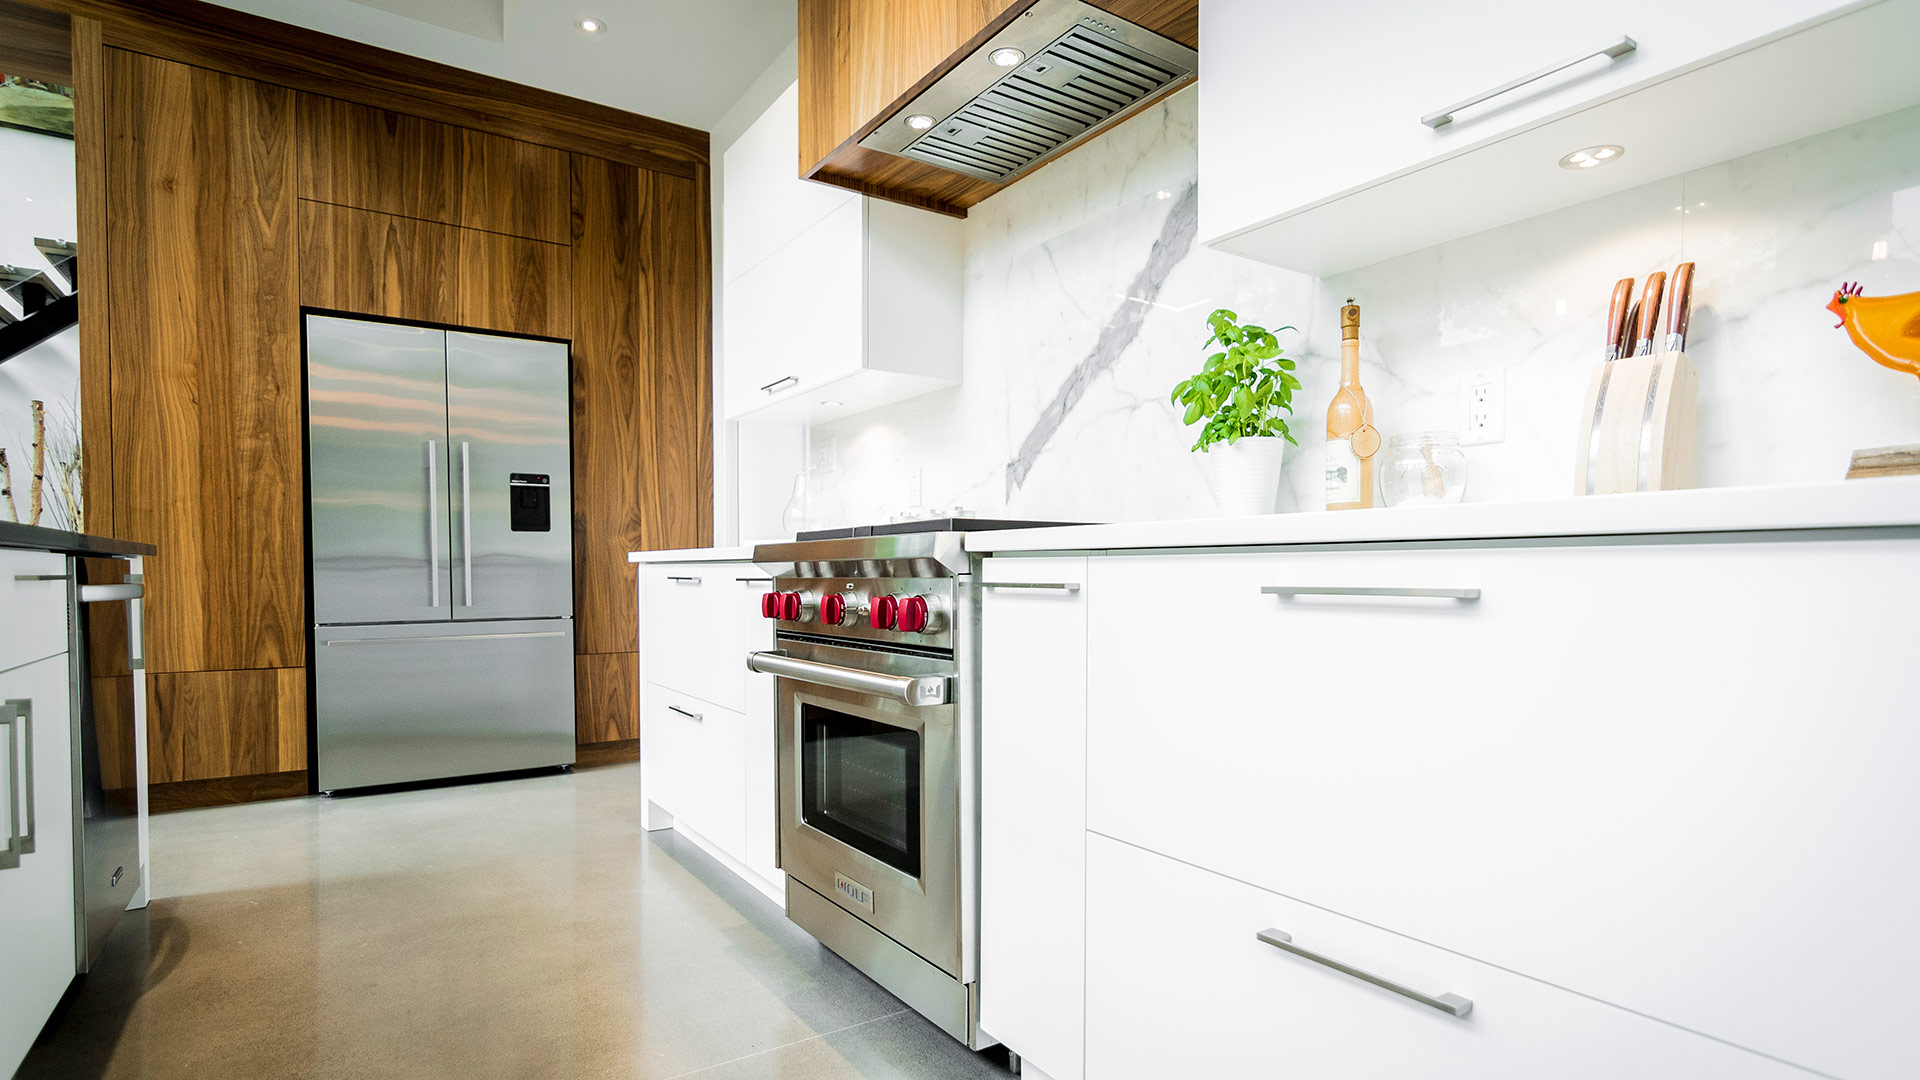 Cuisine moderne à aire ouverte. De très hautes et larges armoires de cuisine encadrent le frigo sans poignées extérieures.